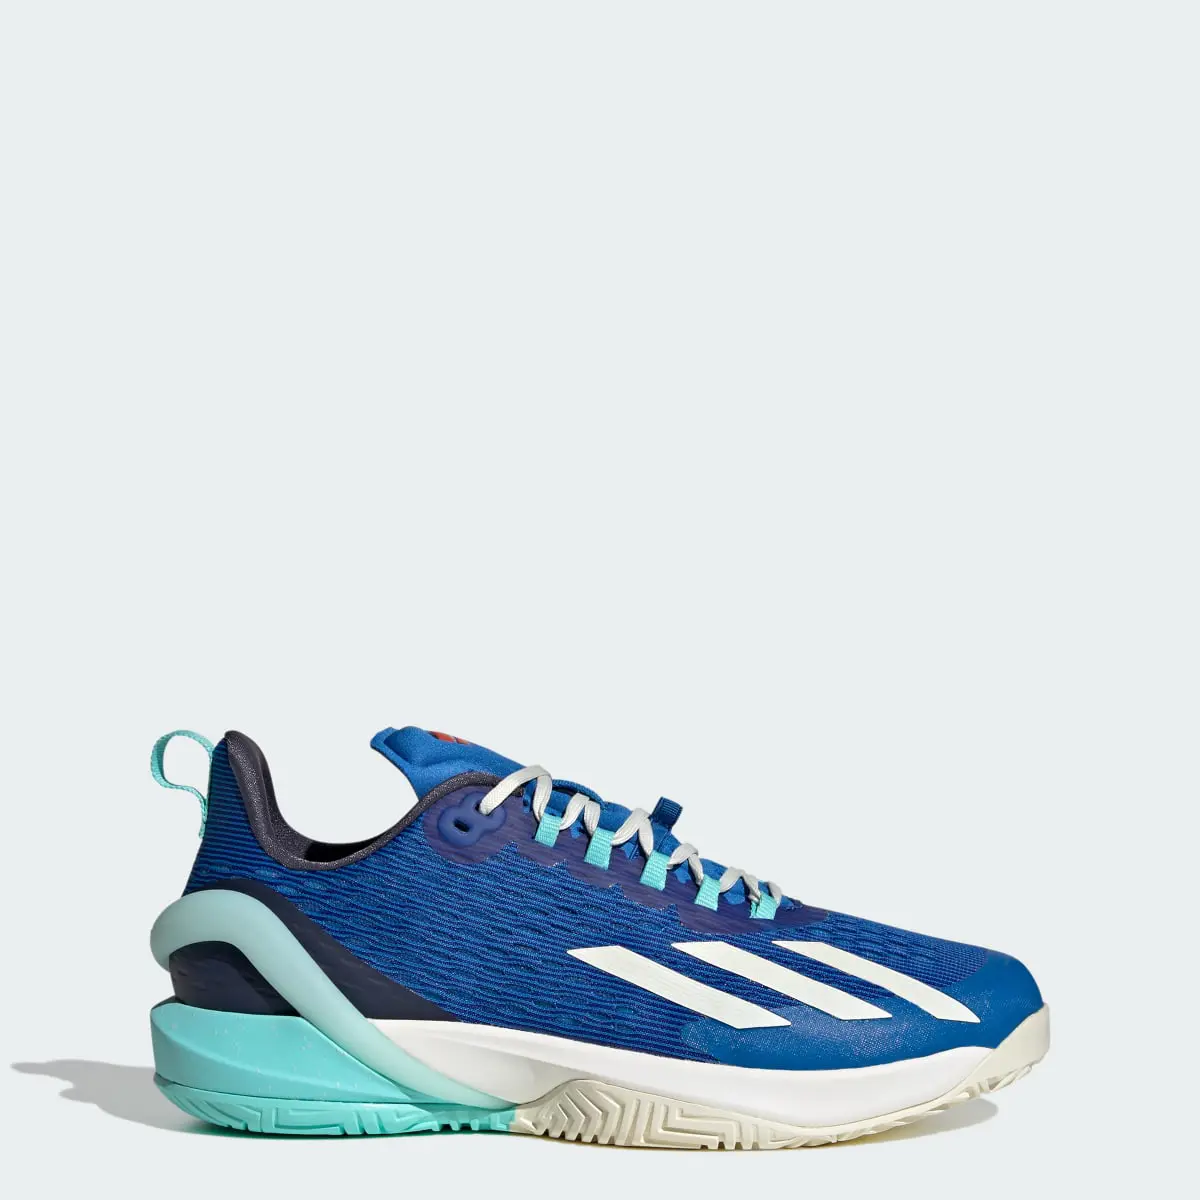 Adidas Scarpe da tennis adizero Cybersonic. 1